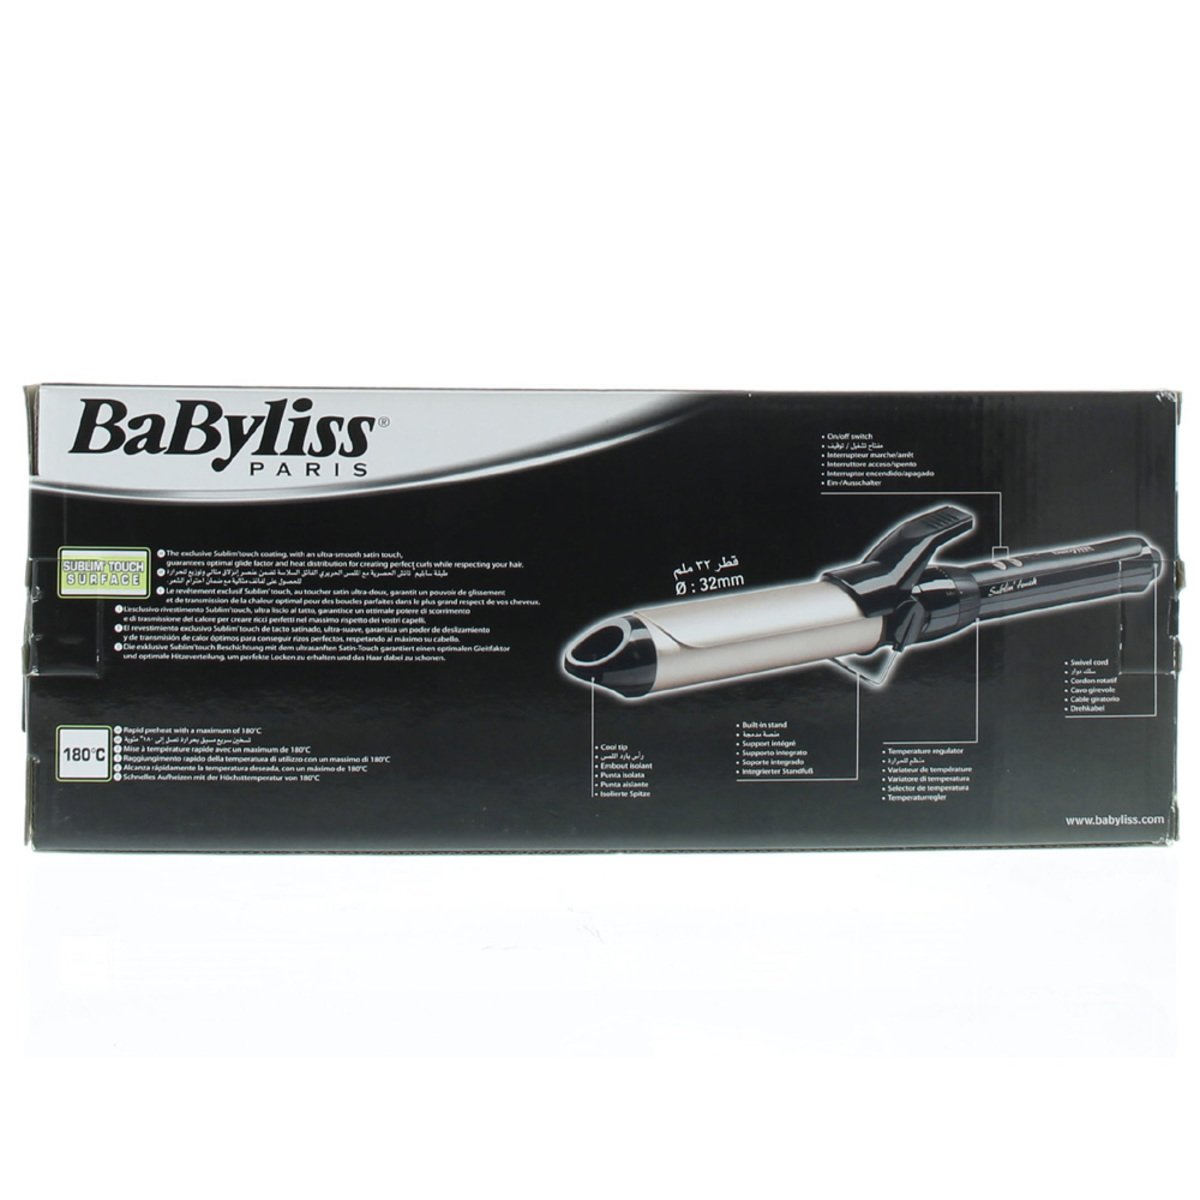 Babyliss Curling Iron Pro BABC332E